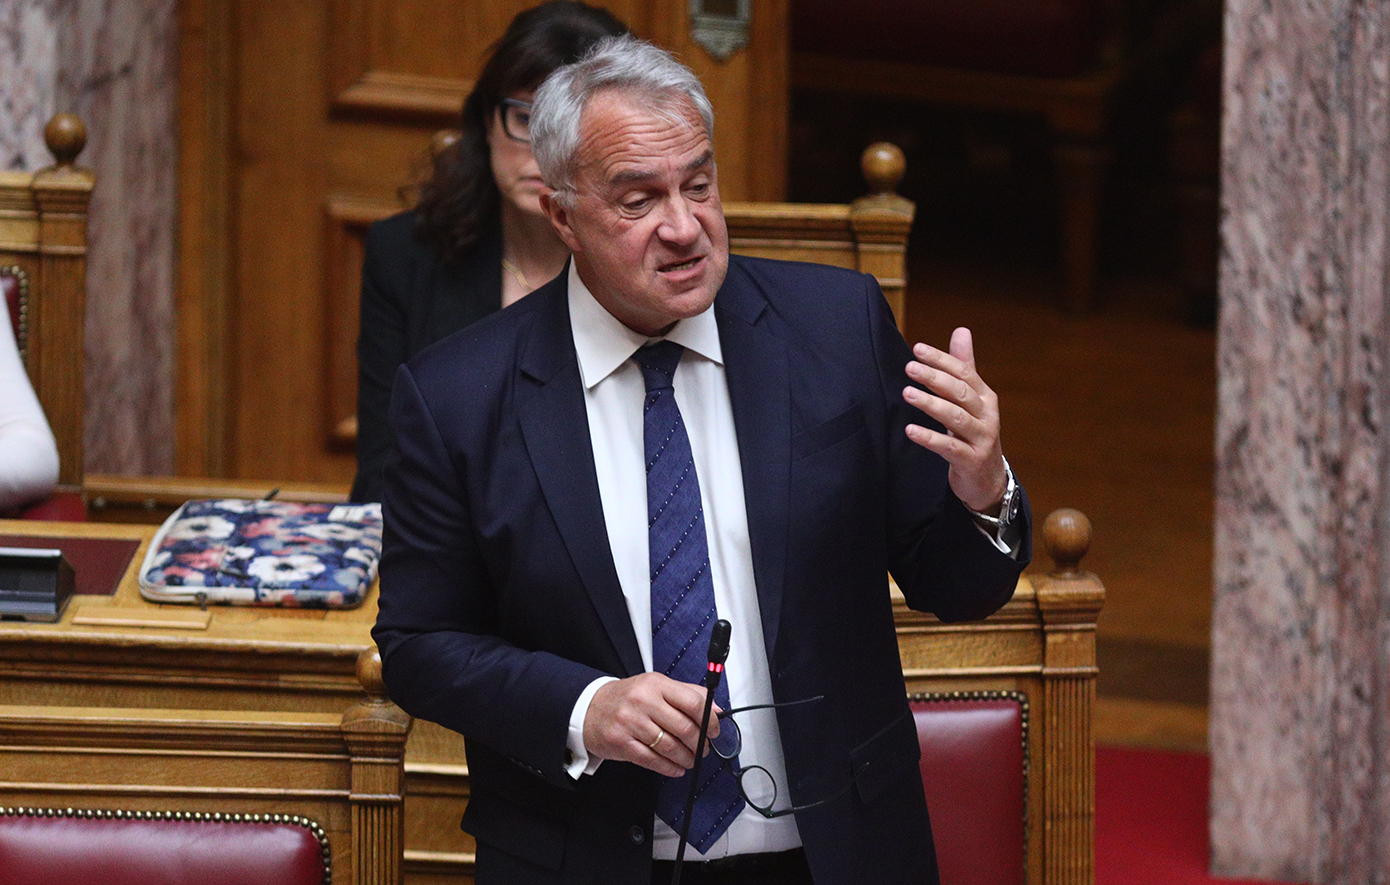 Ο υπουργός Επικρατείας, Μάκης Βορίδης, θα υποδεχτεί στη Βουλή την πρόταση δυσπιστίας κατά της κυβέρνησης